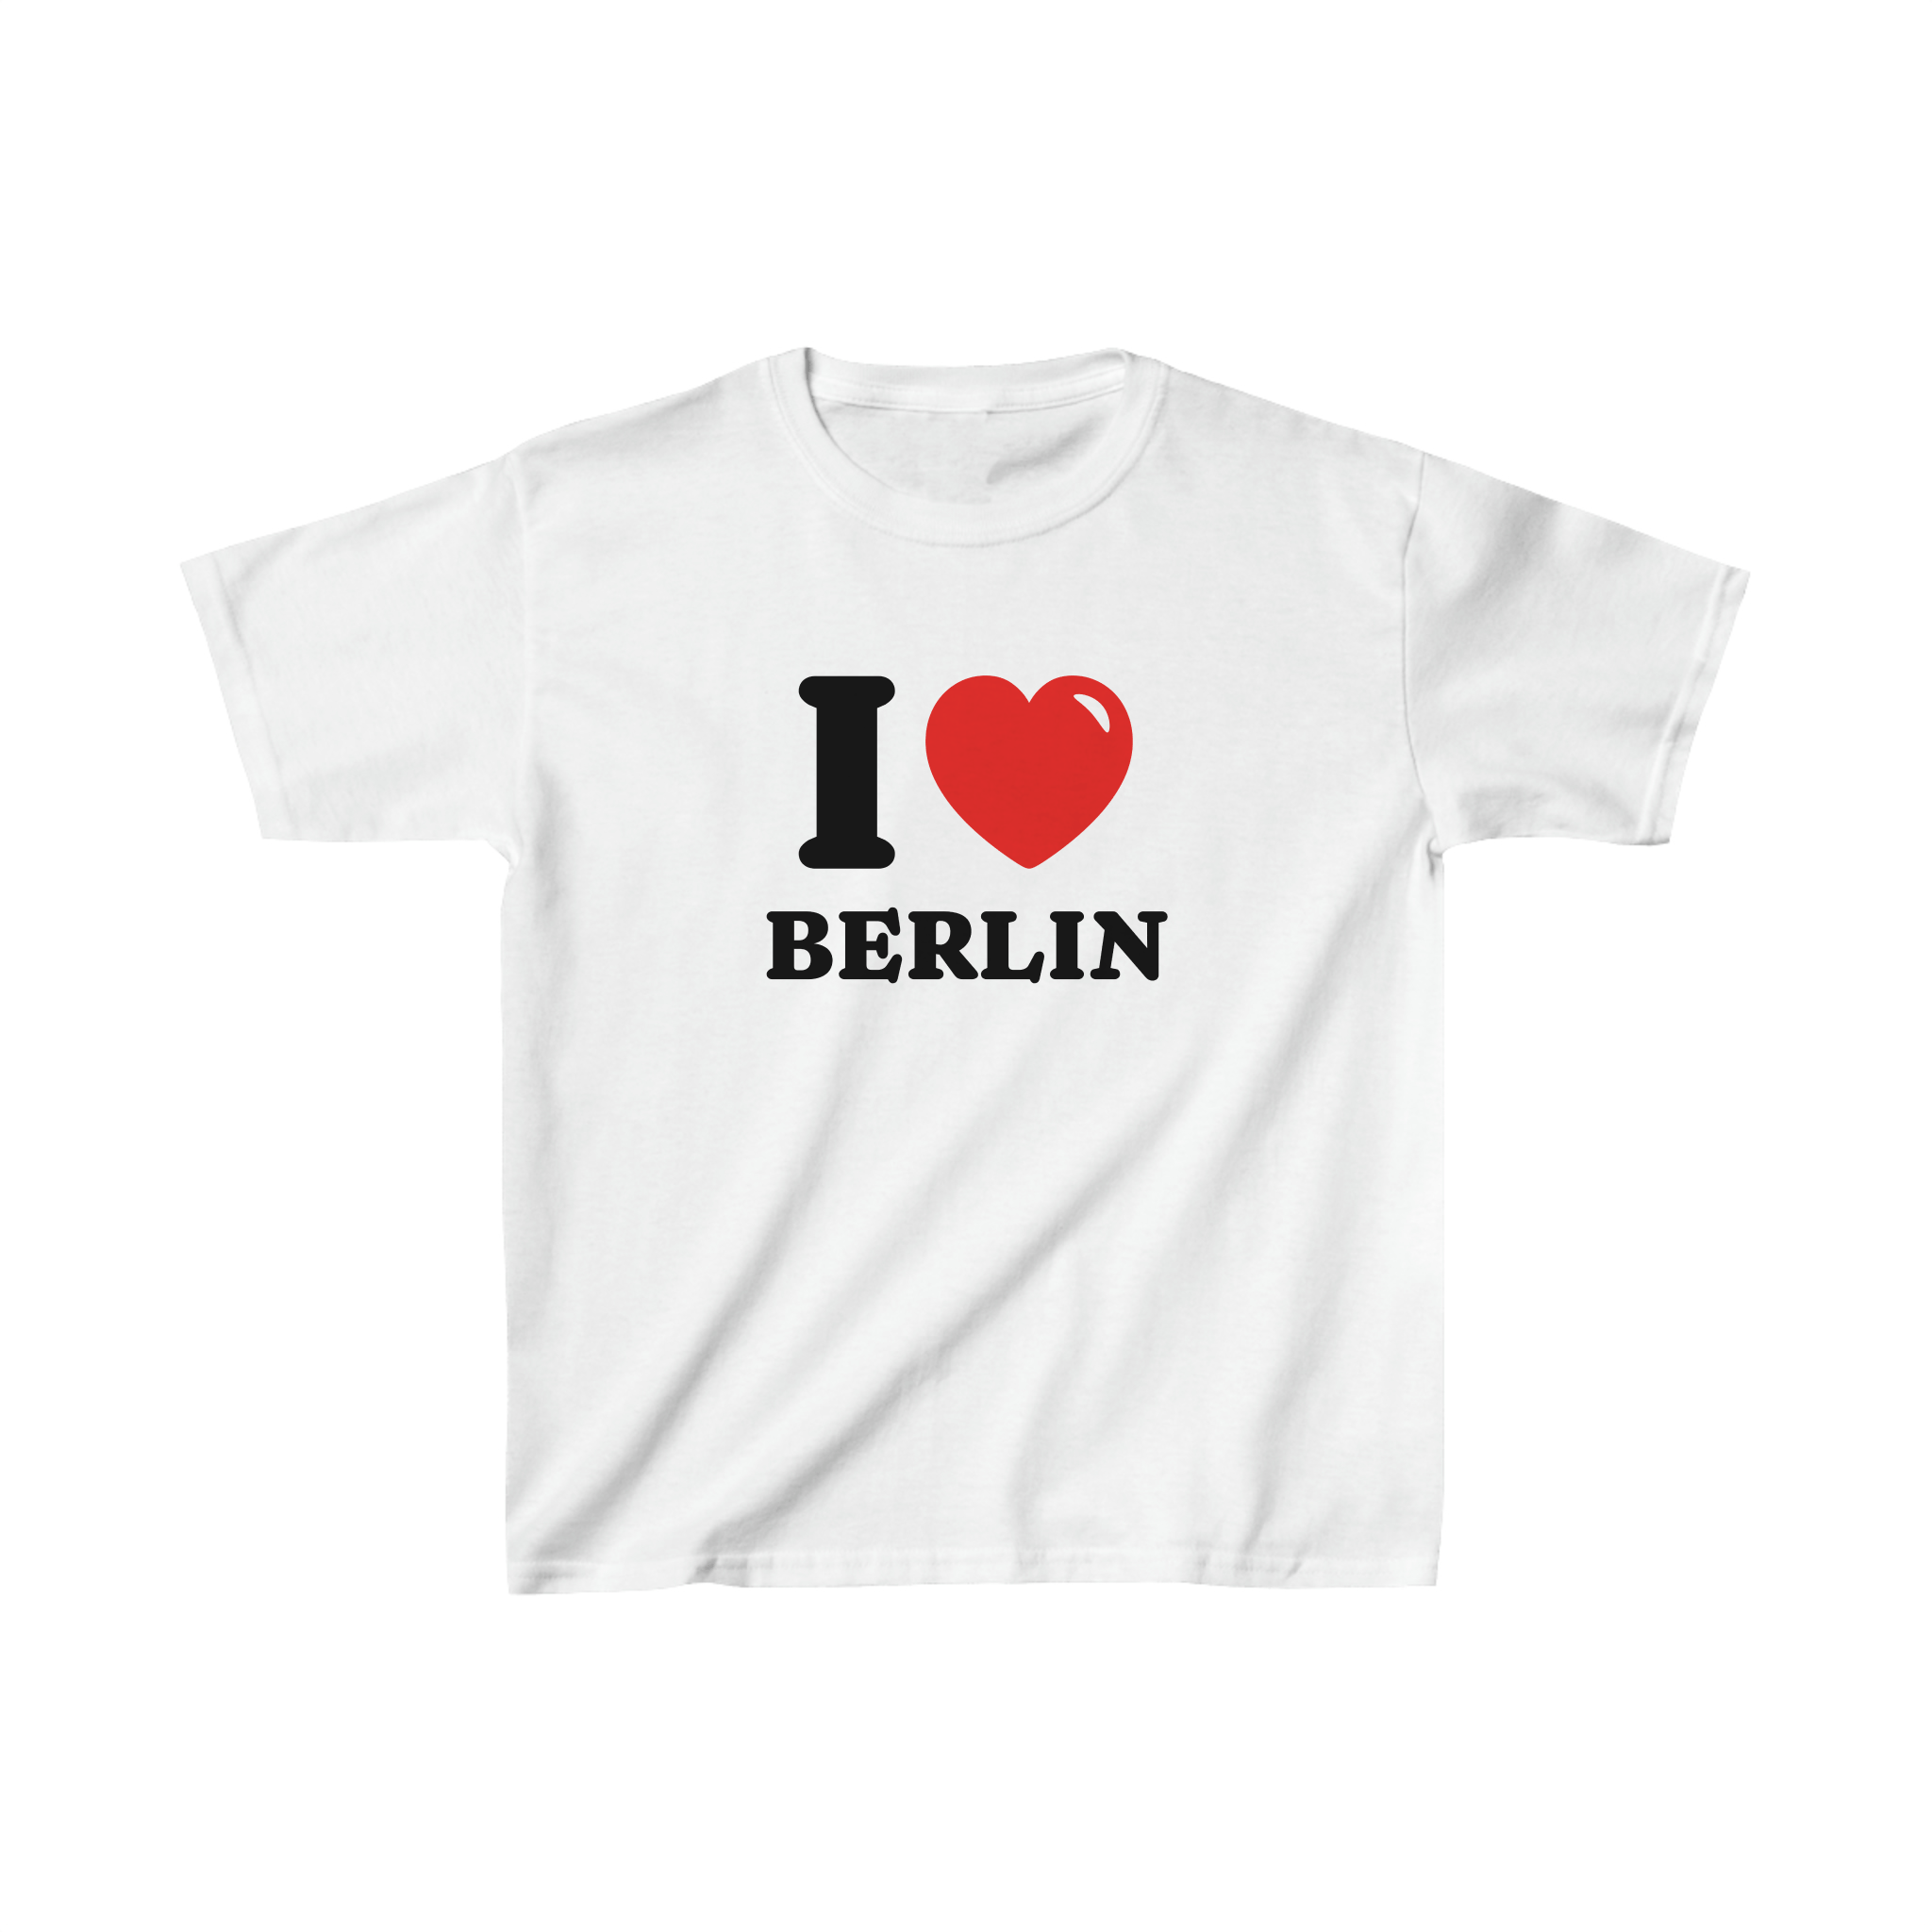 'I love Berlin' baby tee - In Print We Trust